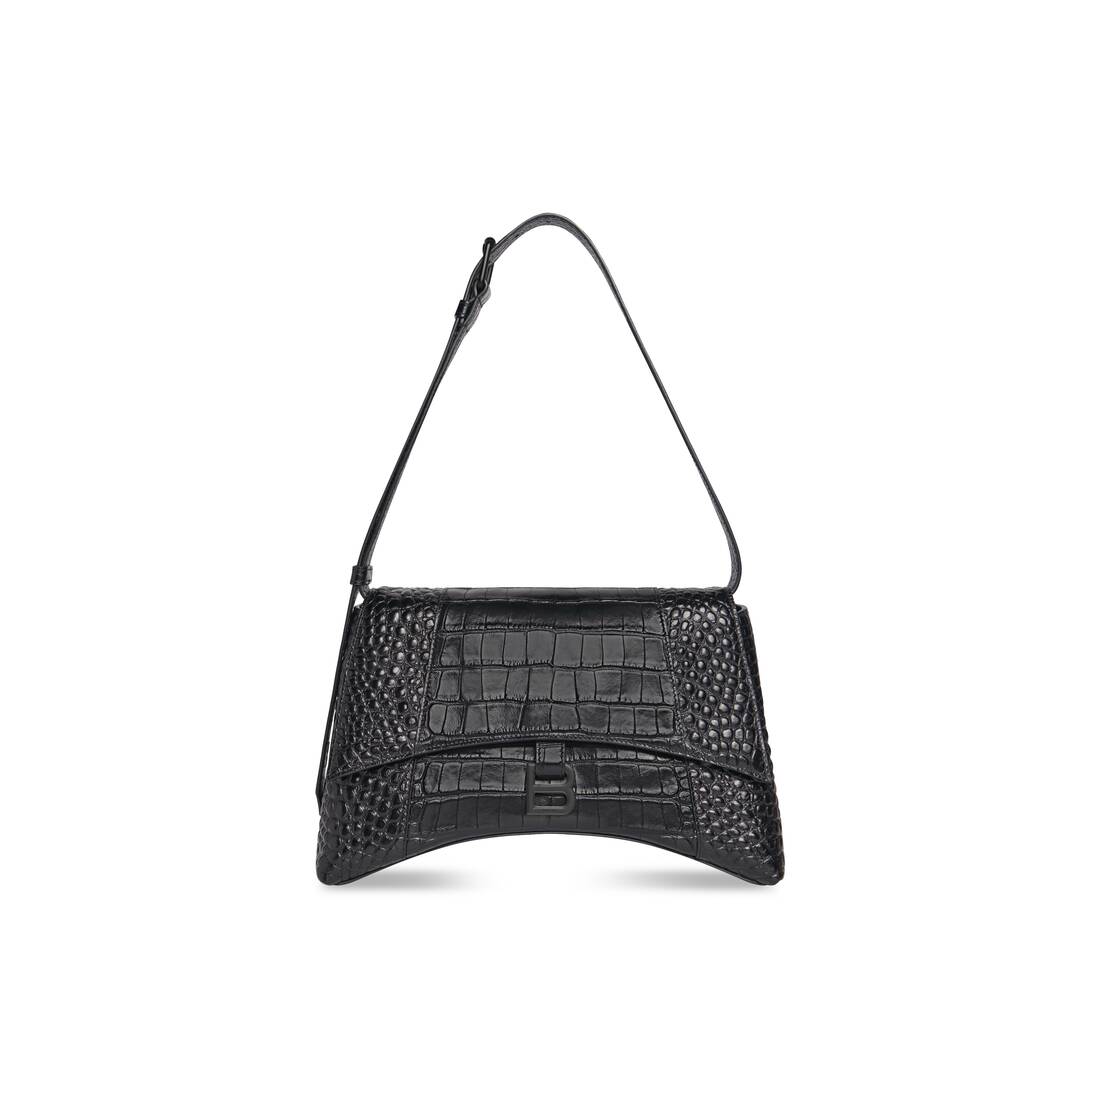 Buy Balenciaga Women Black Shoulder Bag Online  Best Price in India   Flipkartcom